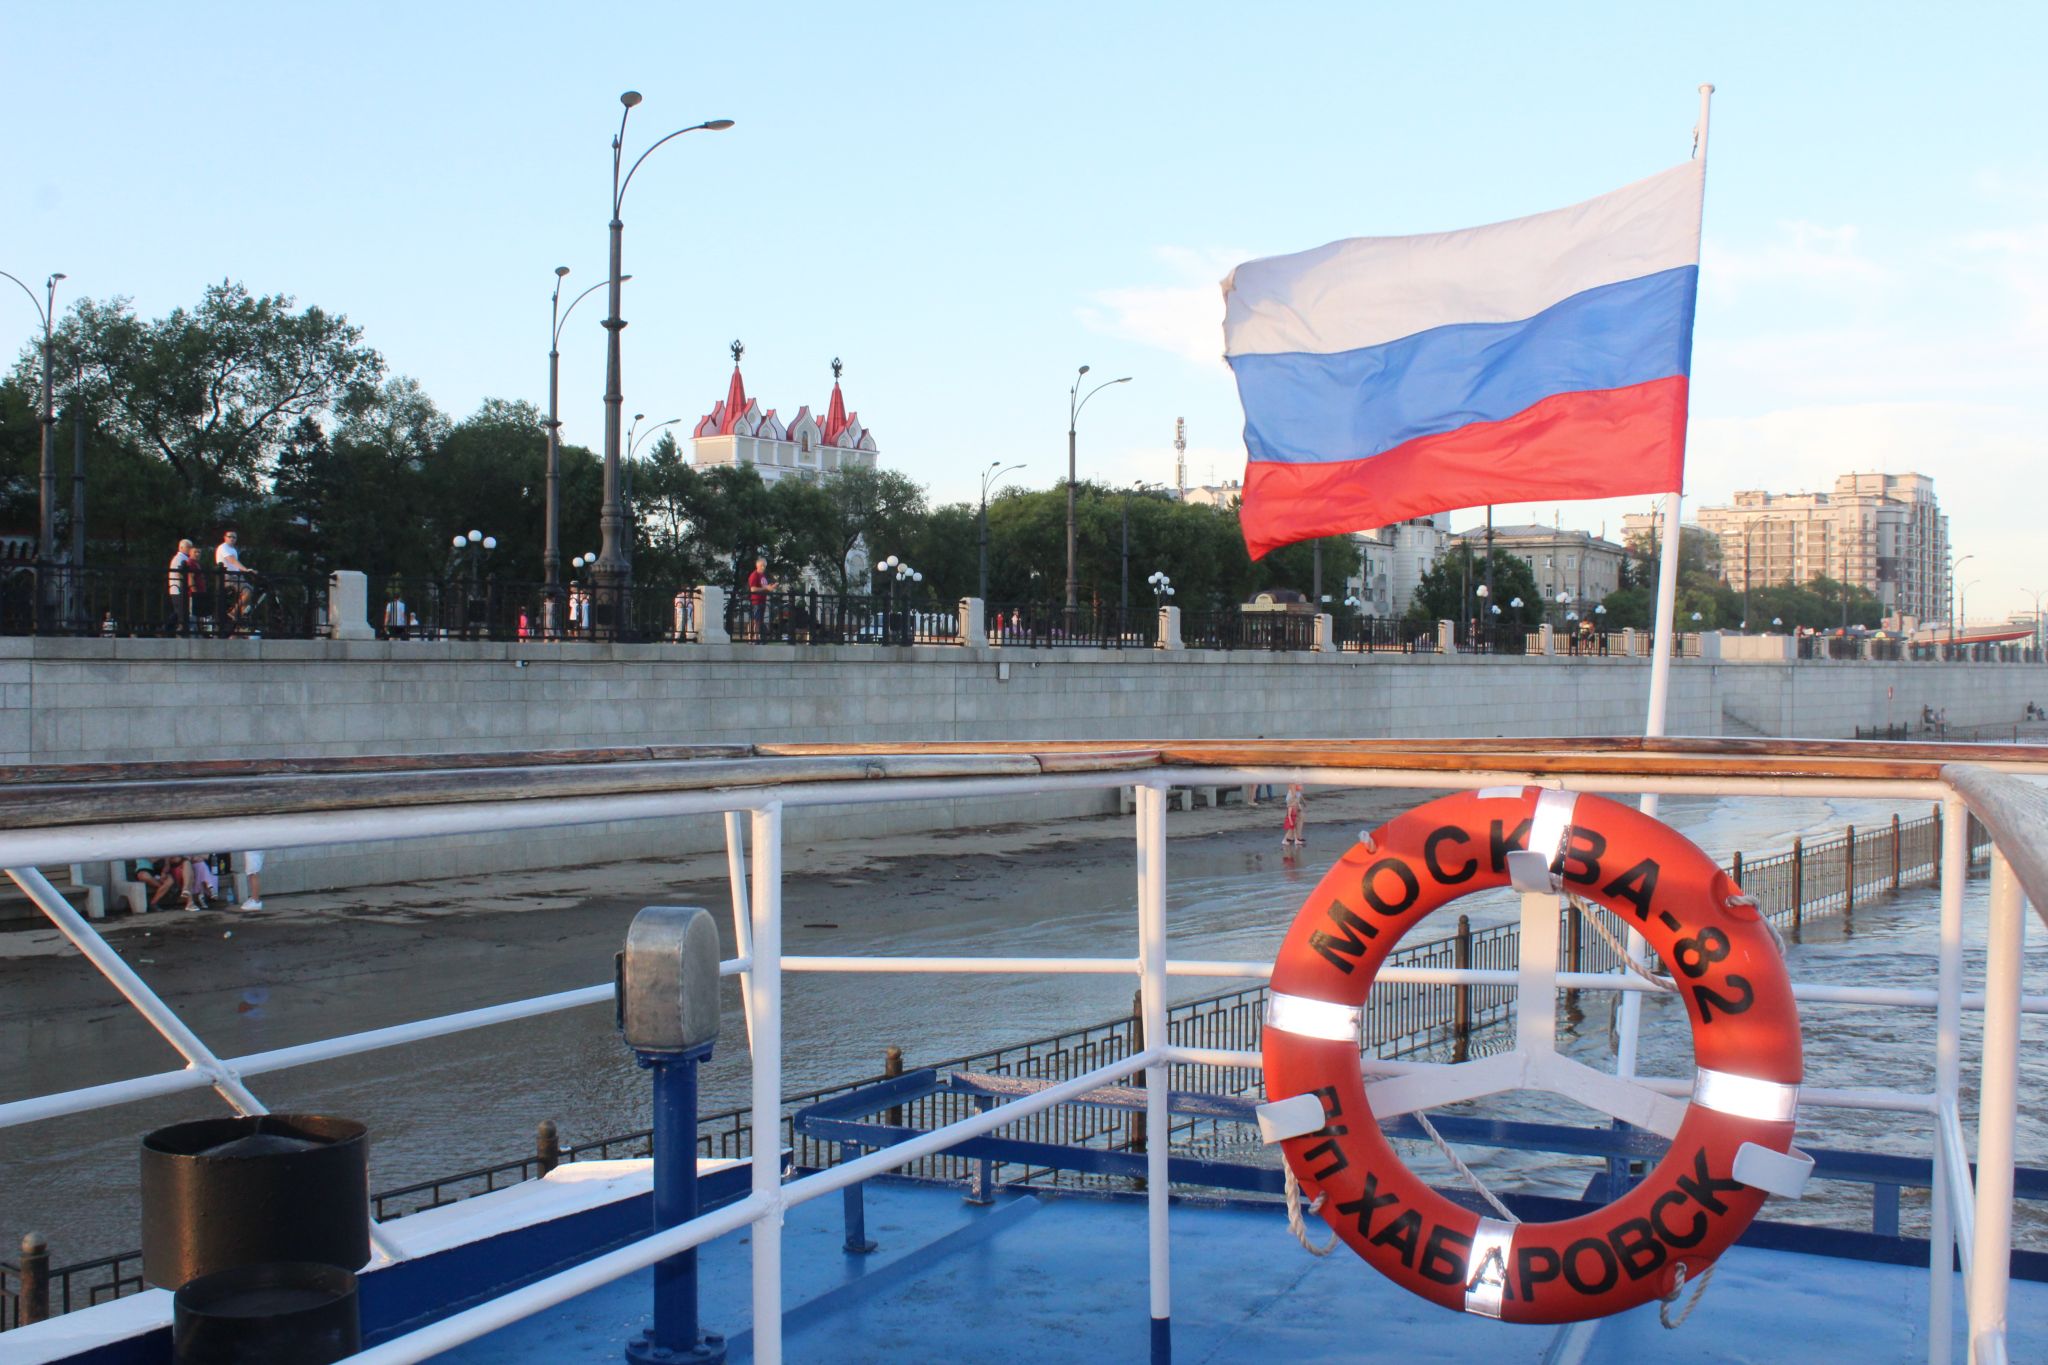 Профессиональный праздник российских корабелов - День кораблестроителя отмечается 29 июня